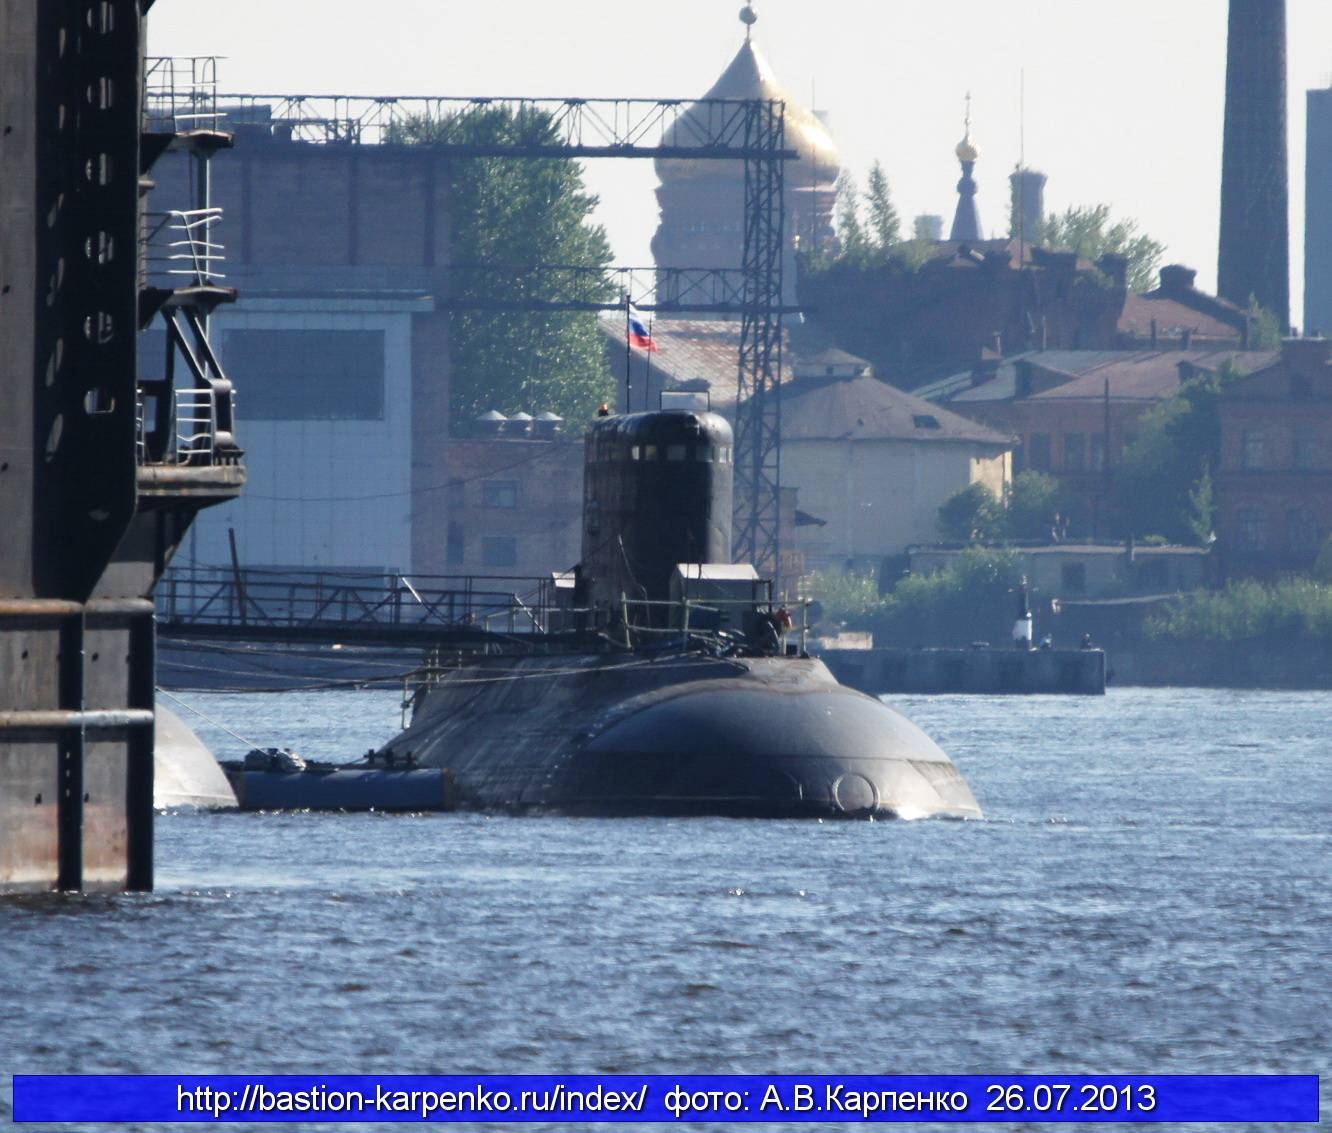 Список подводных лодок проектов 877 и 636 — википедия переиздание // wiki 2